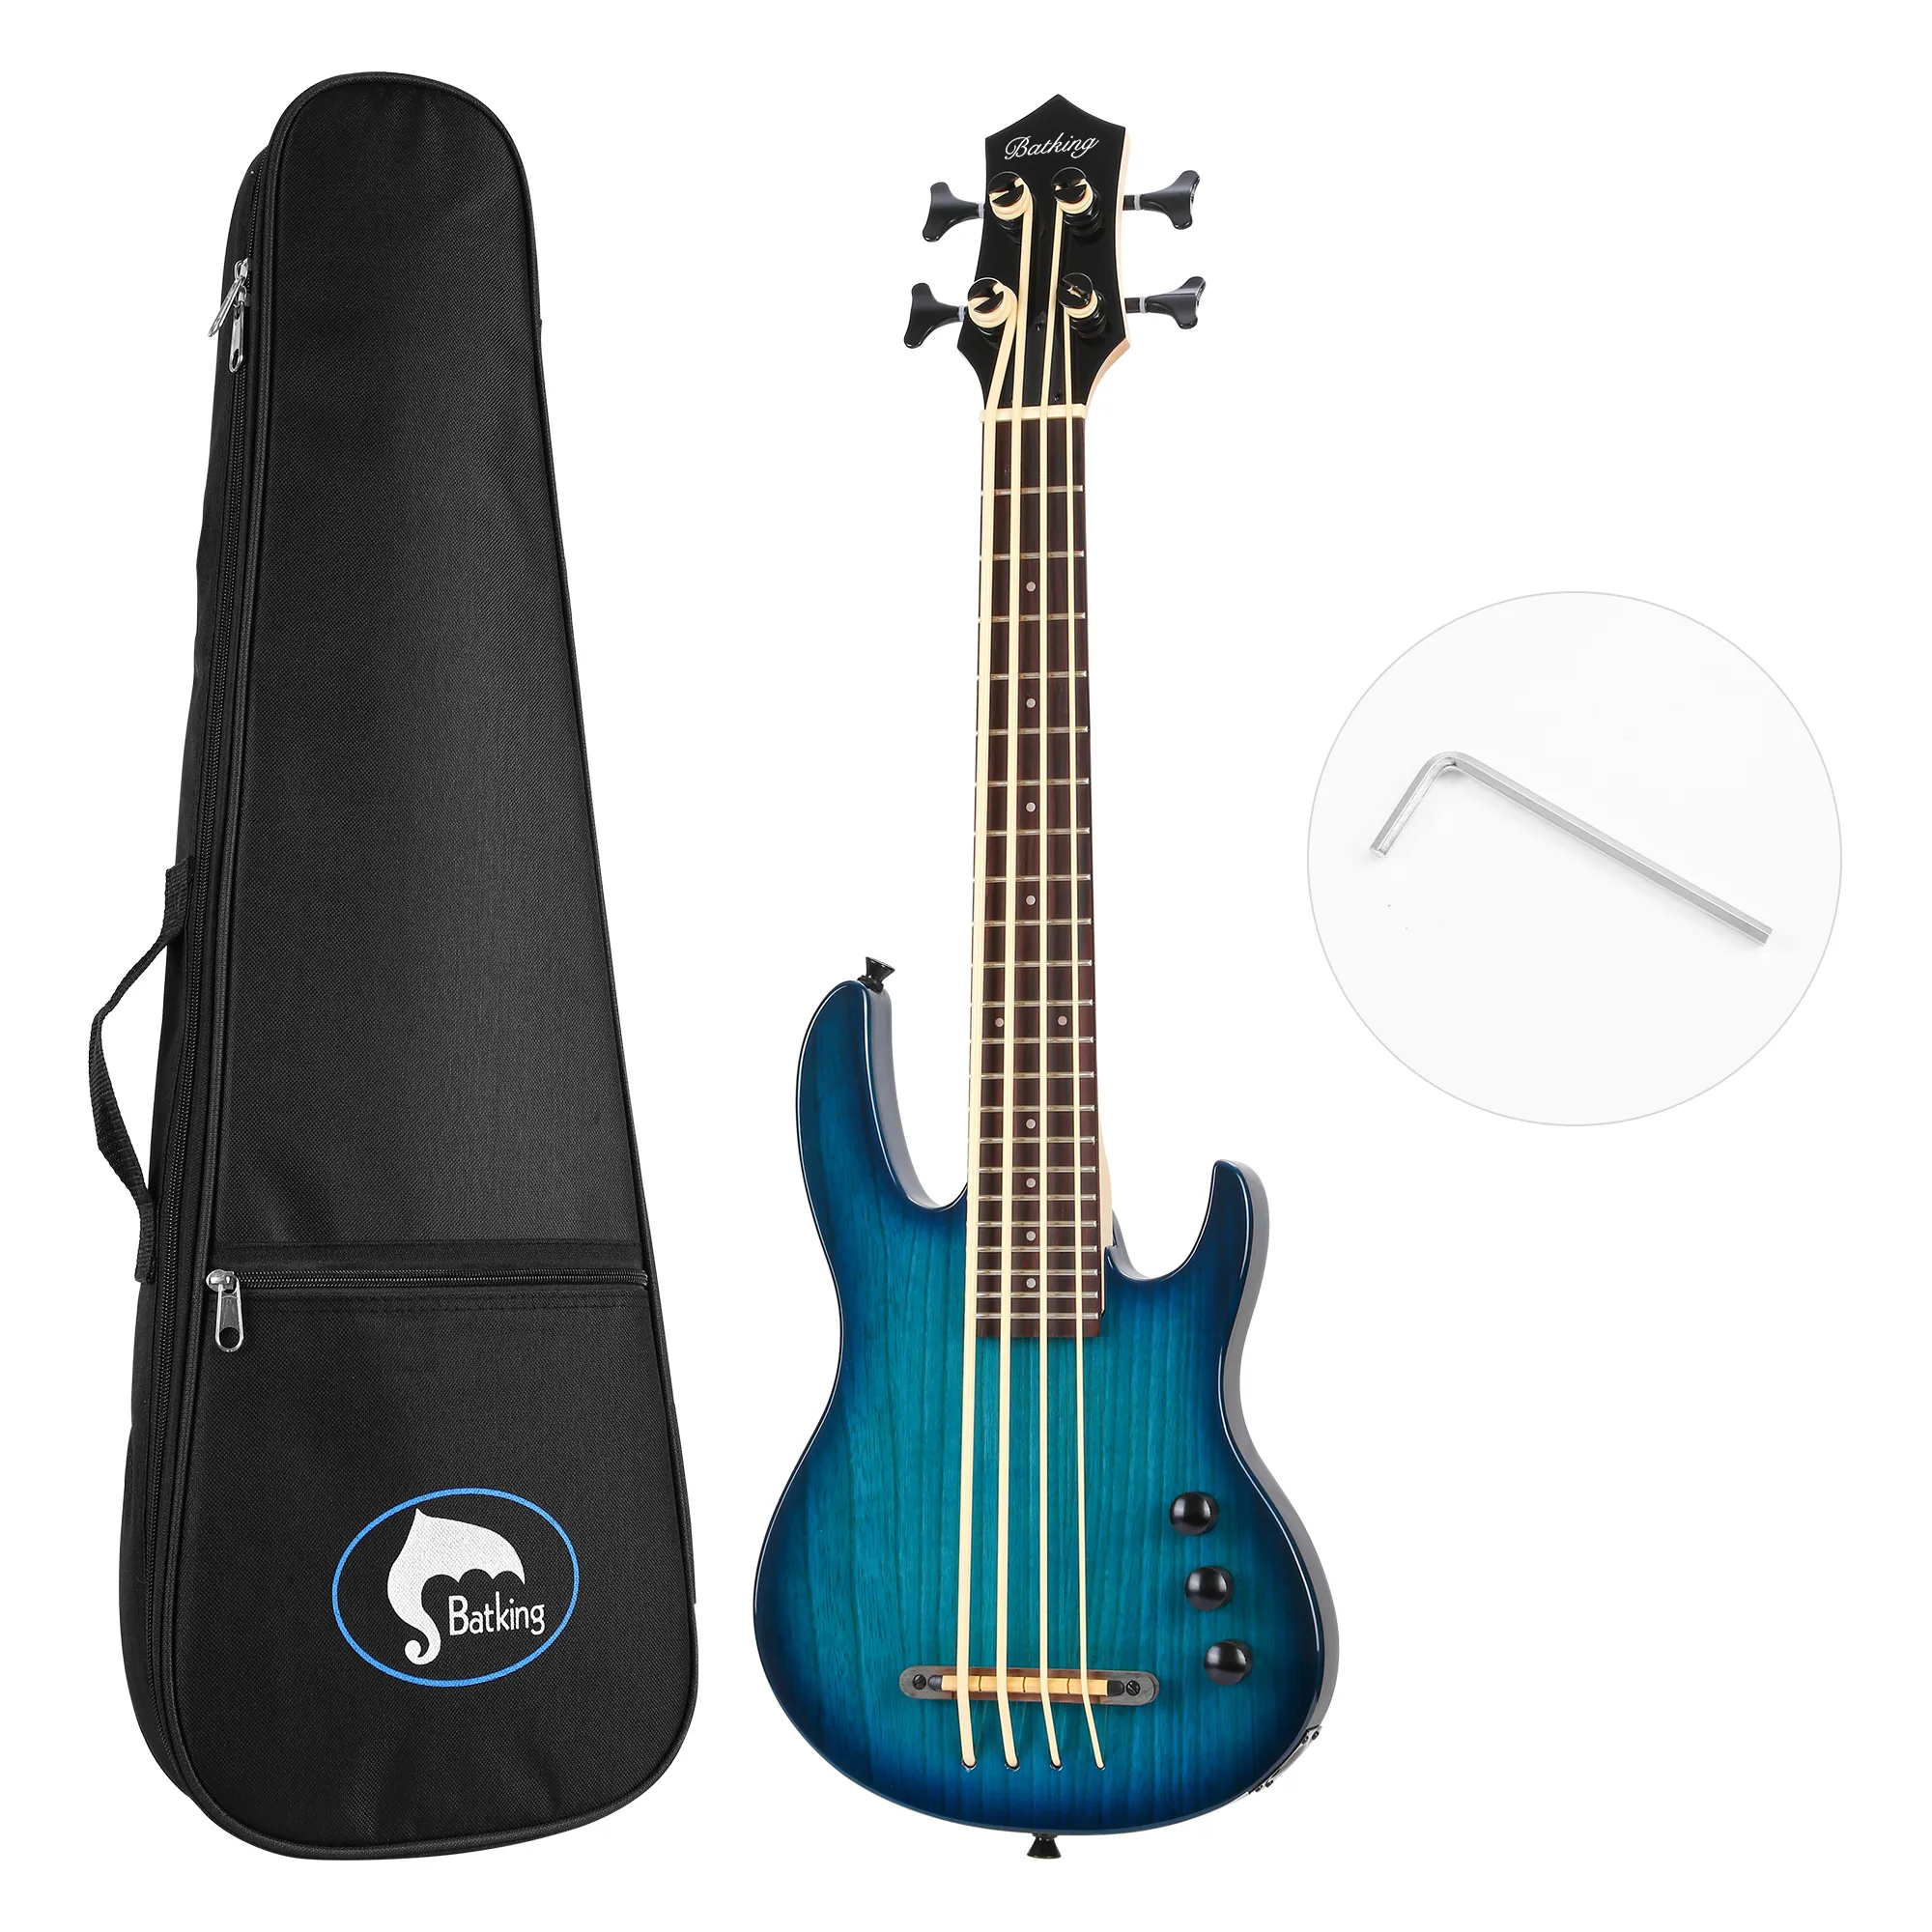 Ukulele Electric Bass Uke Guitar Mini 4String Aquila String From Italy Eadg Ashwood Body con bolsa de concierto en color azul